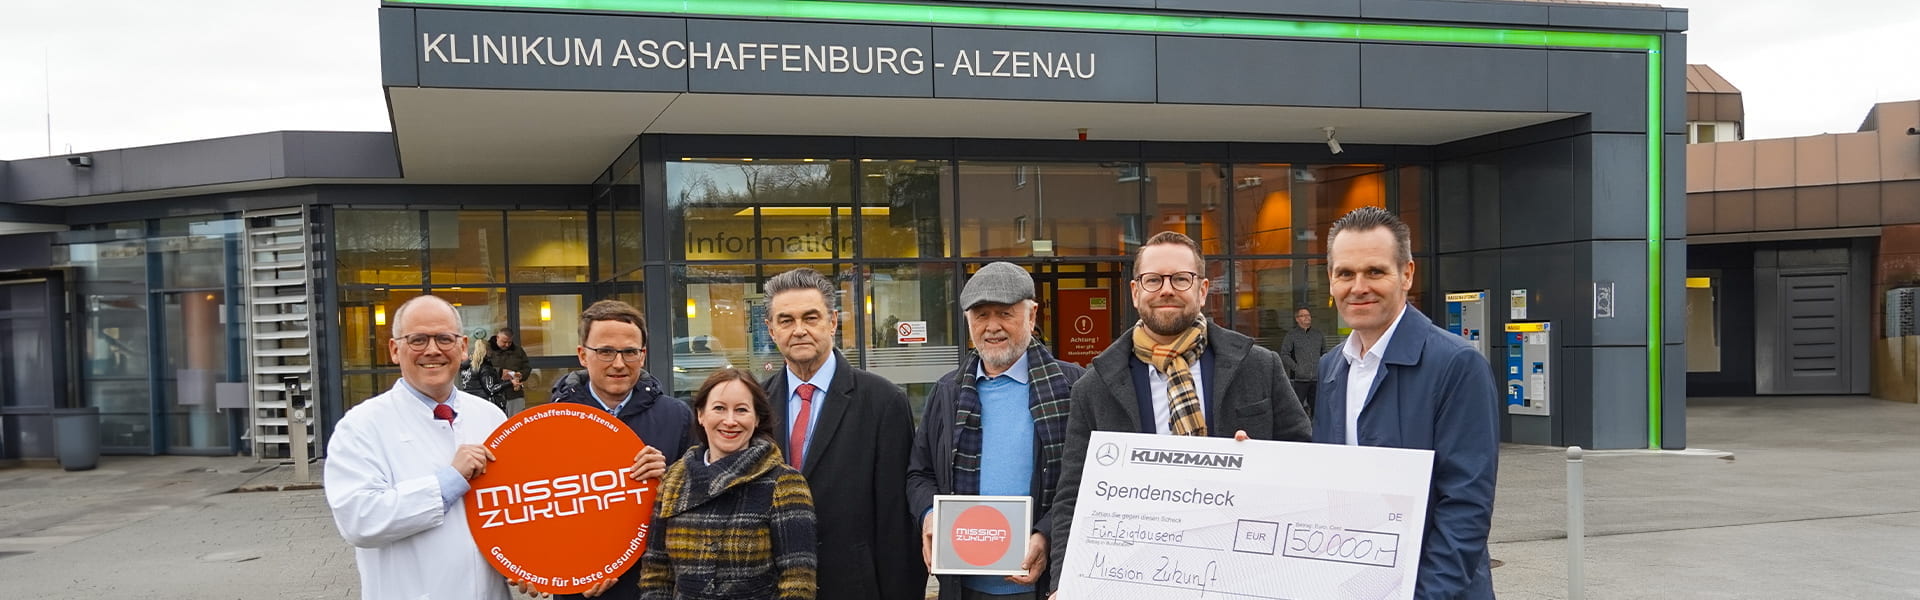 Mission Zukunft - Spendenübergabe Klinikum Aschaffenburg